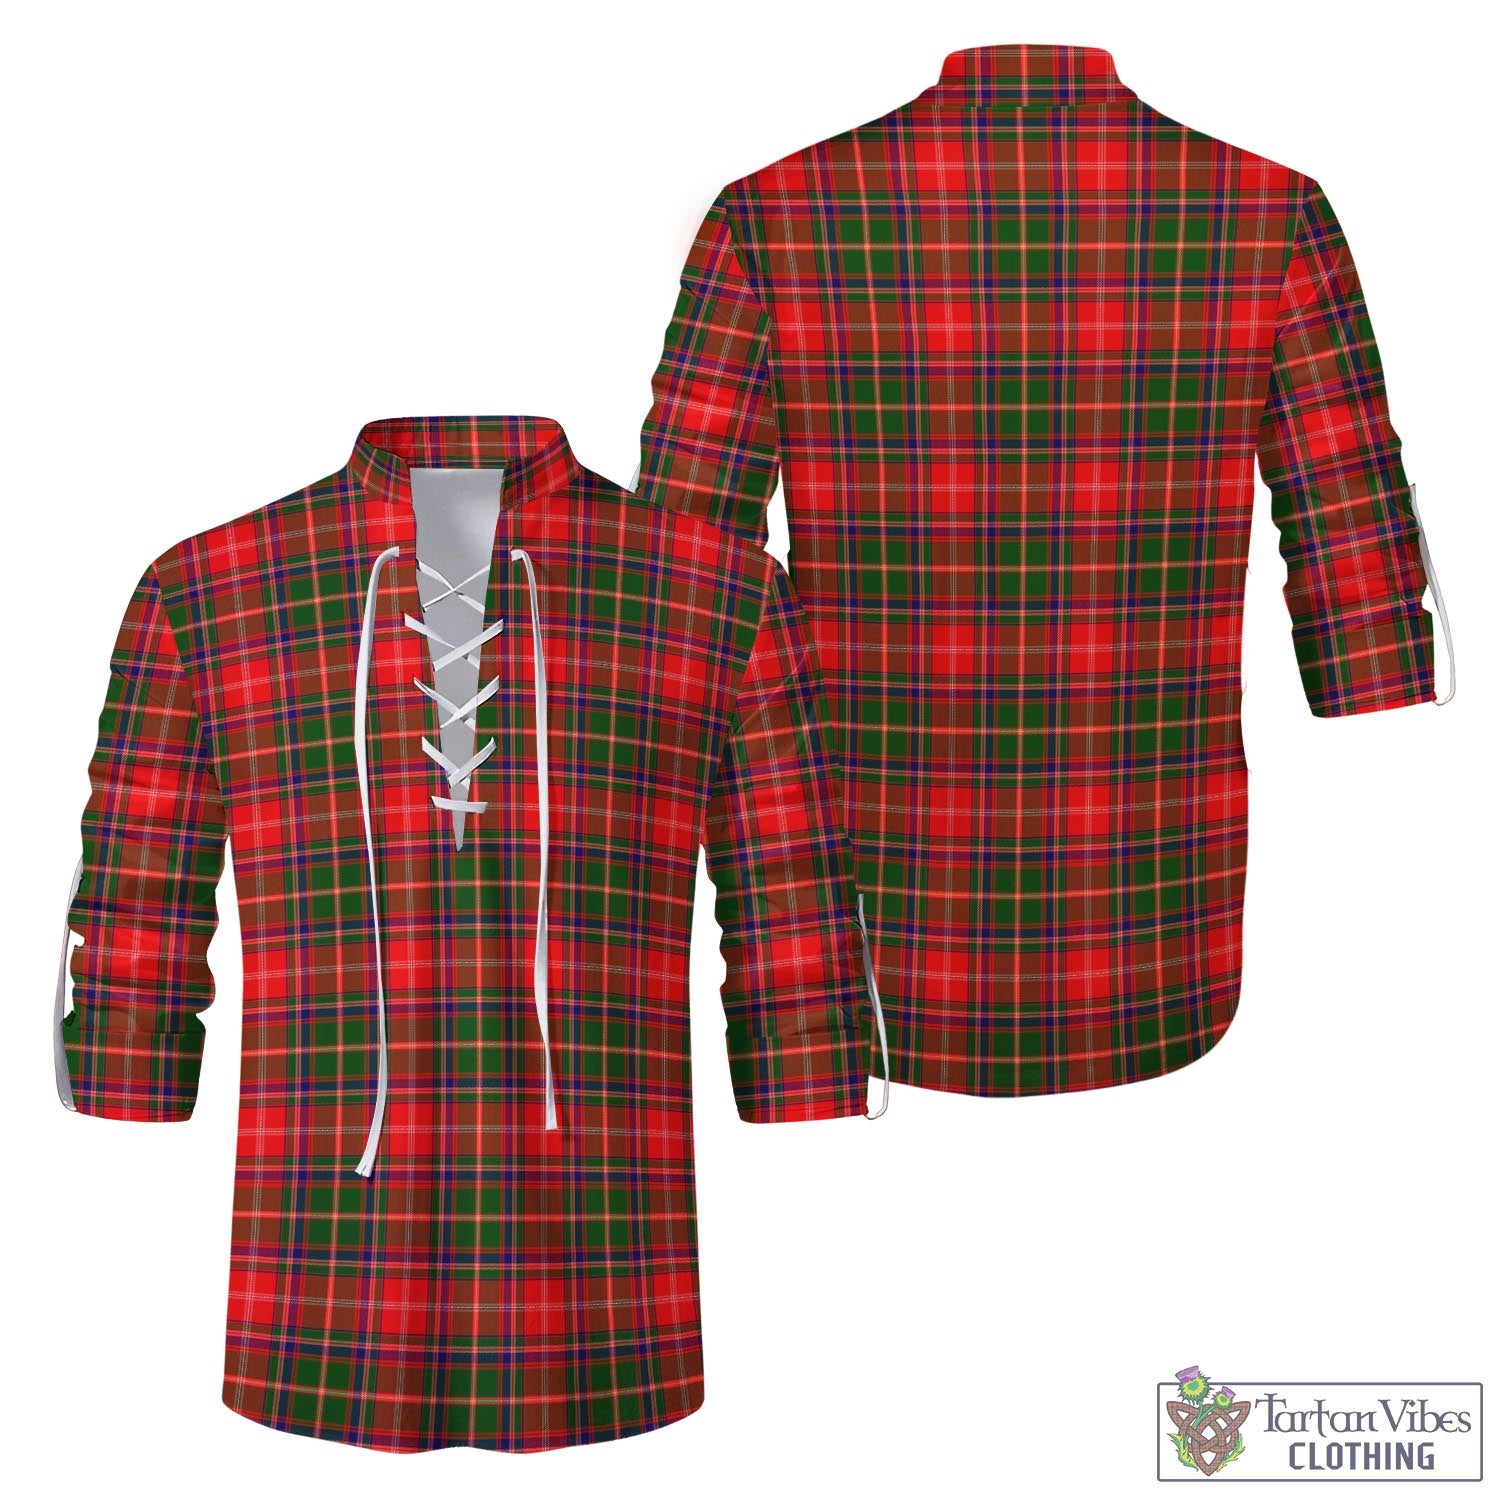 Tartan Vibes Clothing Somerville Modern Tartan Men's Scottish Traditional Jacobite Ghillie Kilt Shirt